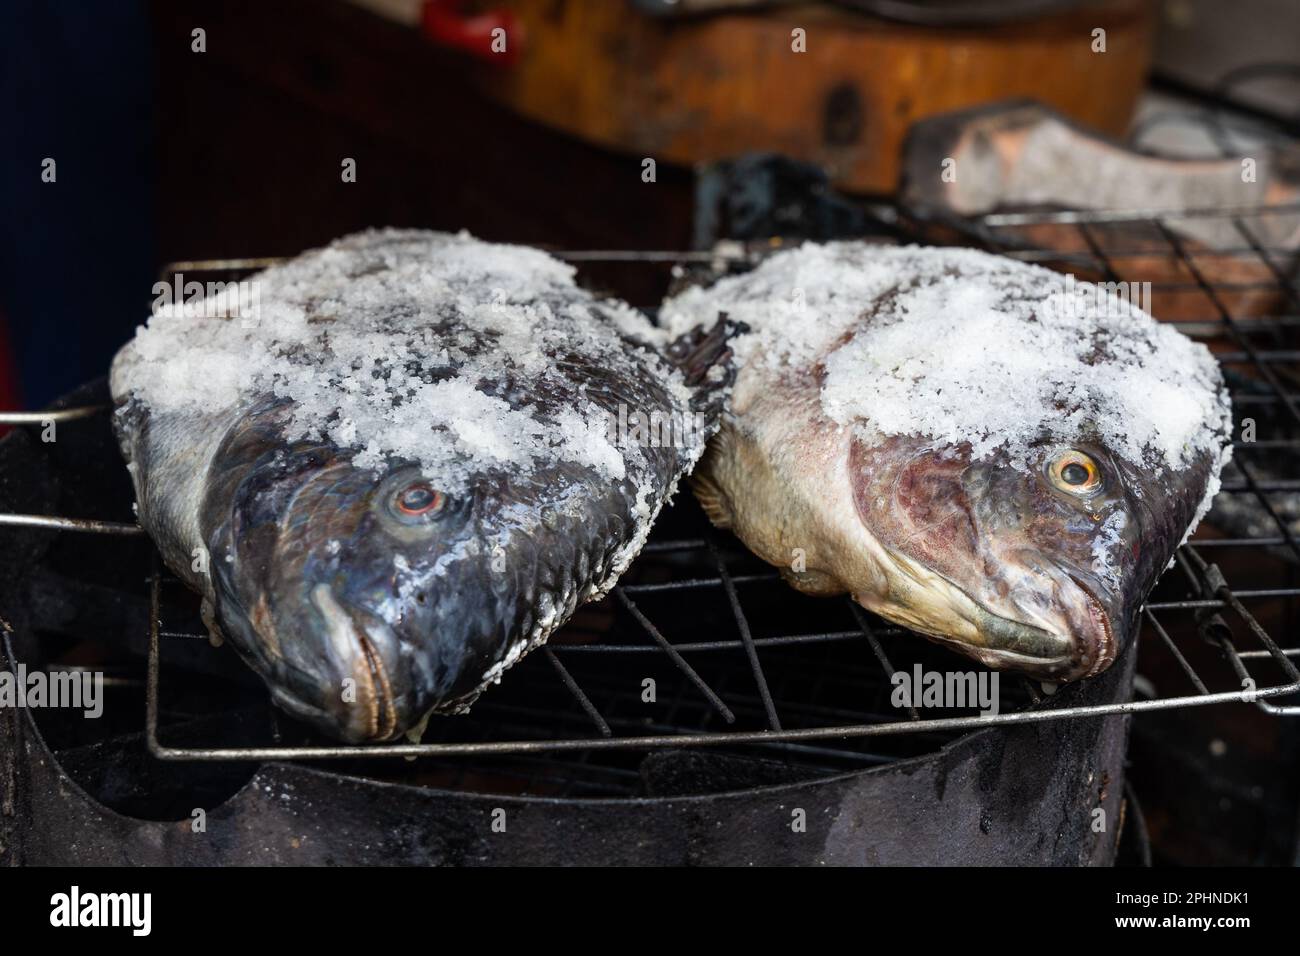 Le poisson barbecue en croûte de sel est populaire dans la rue en Thaïlande. Le poisson est masqué avec du sel et prêt à être grillé Banque D'Images